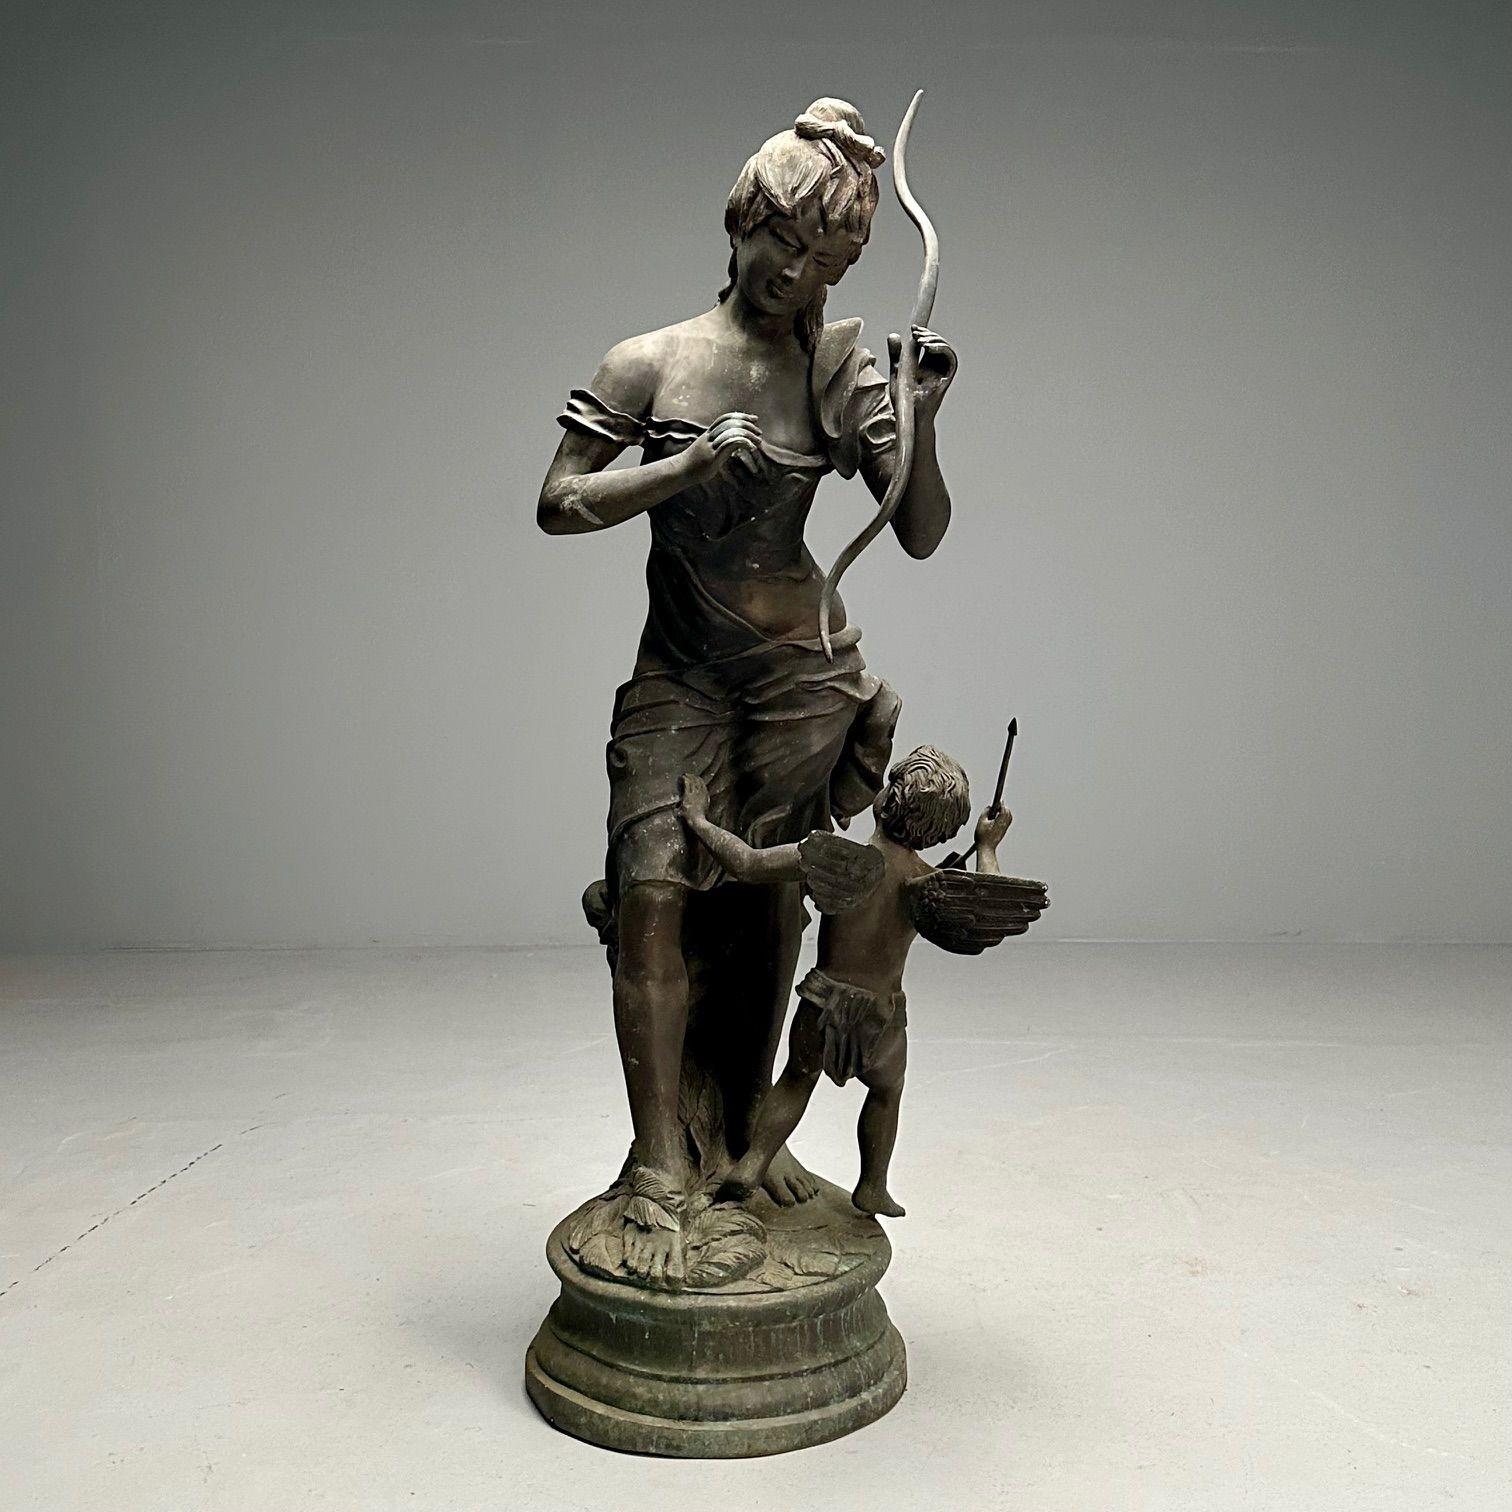 Patinierte Bronzestatue der Venus, die Amor entwaffnet. Venus hält spielerisch Amors Bogen, während Amor in der Luft ist und sich umsieht. 
 
Gekauft bei Tepper Galleries in NYC und verschickt nach São Paulo, Brasilien. Diese lebensgroße, gut